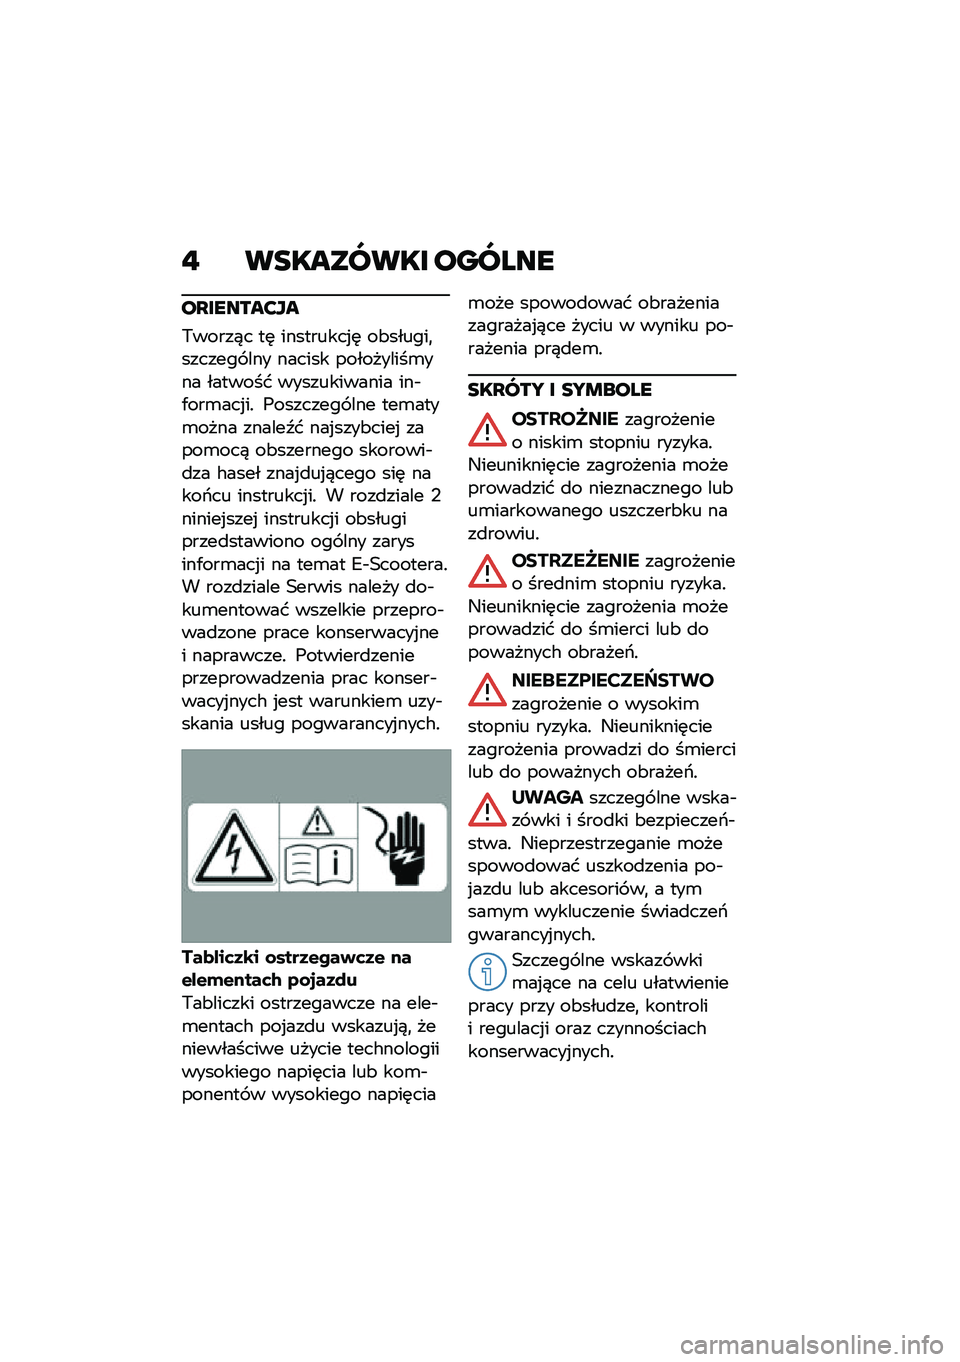 BMW MOTORRAD CE 04 2021  Instrukcja obsługi (in Polish) �" ��������� ������
��L������?��
�,�����)� ��	 ���������%�	 ��&������
������� ��� ������ ����������\b��� ������� �����